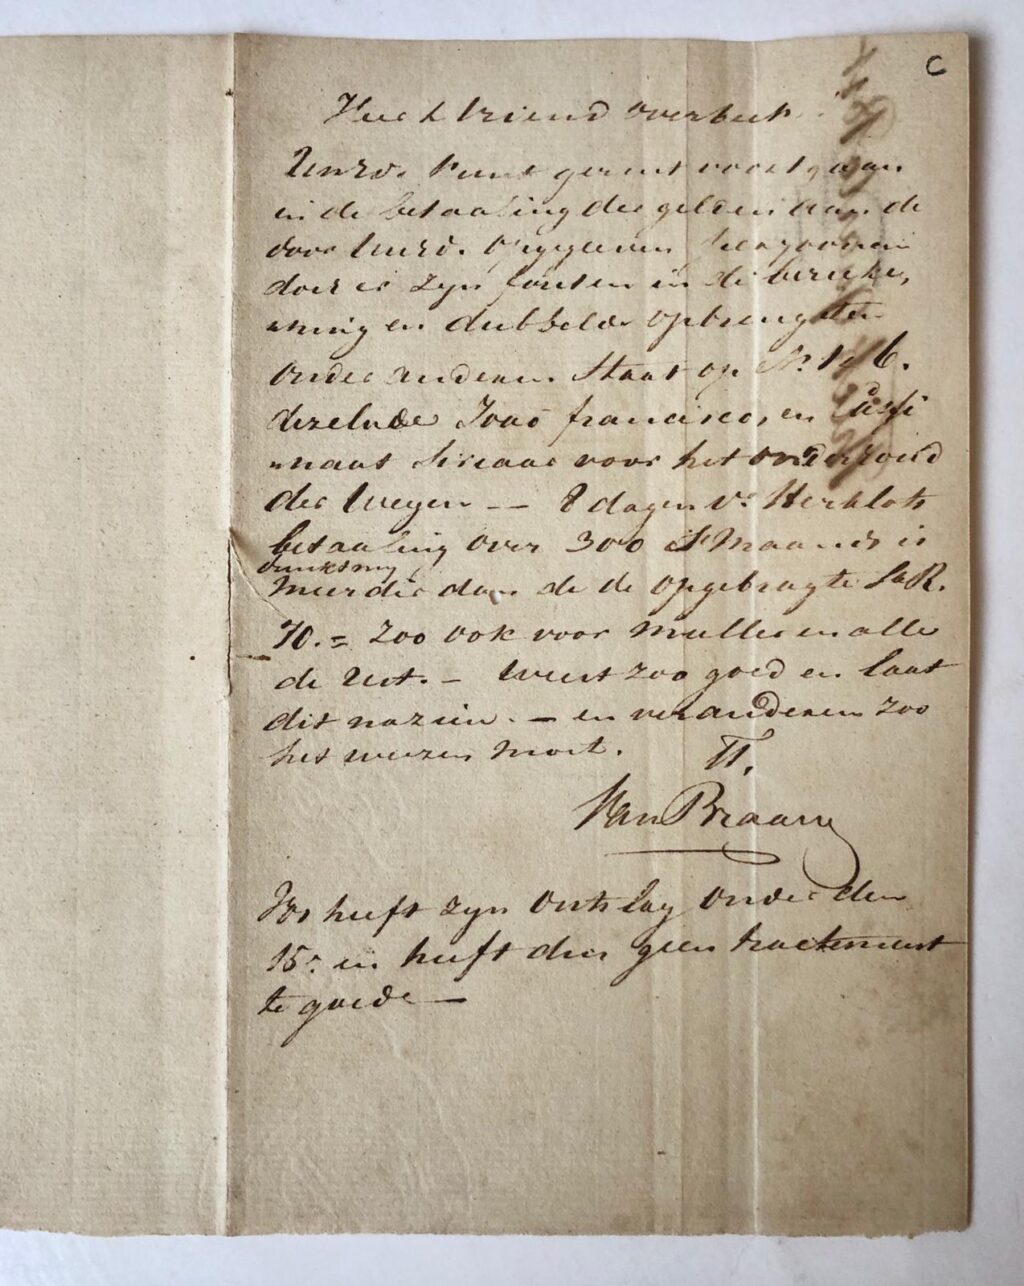 [Manuscript 1817] Brief van de resident D.A. Overbeek aan Commissaris A. van Braam, d.d. Cintsura 25 september 1817 betreffende de betaling aan de dienaren die gecontinueerd zijn onder genot van salaris weleer door de Engelsen gegeven, over de 8 dagen tussen 15 en 22 september 1817. Manuscript, 4°, 2 p.